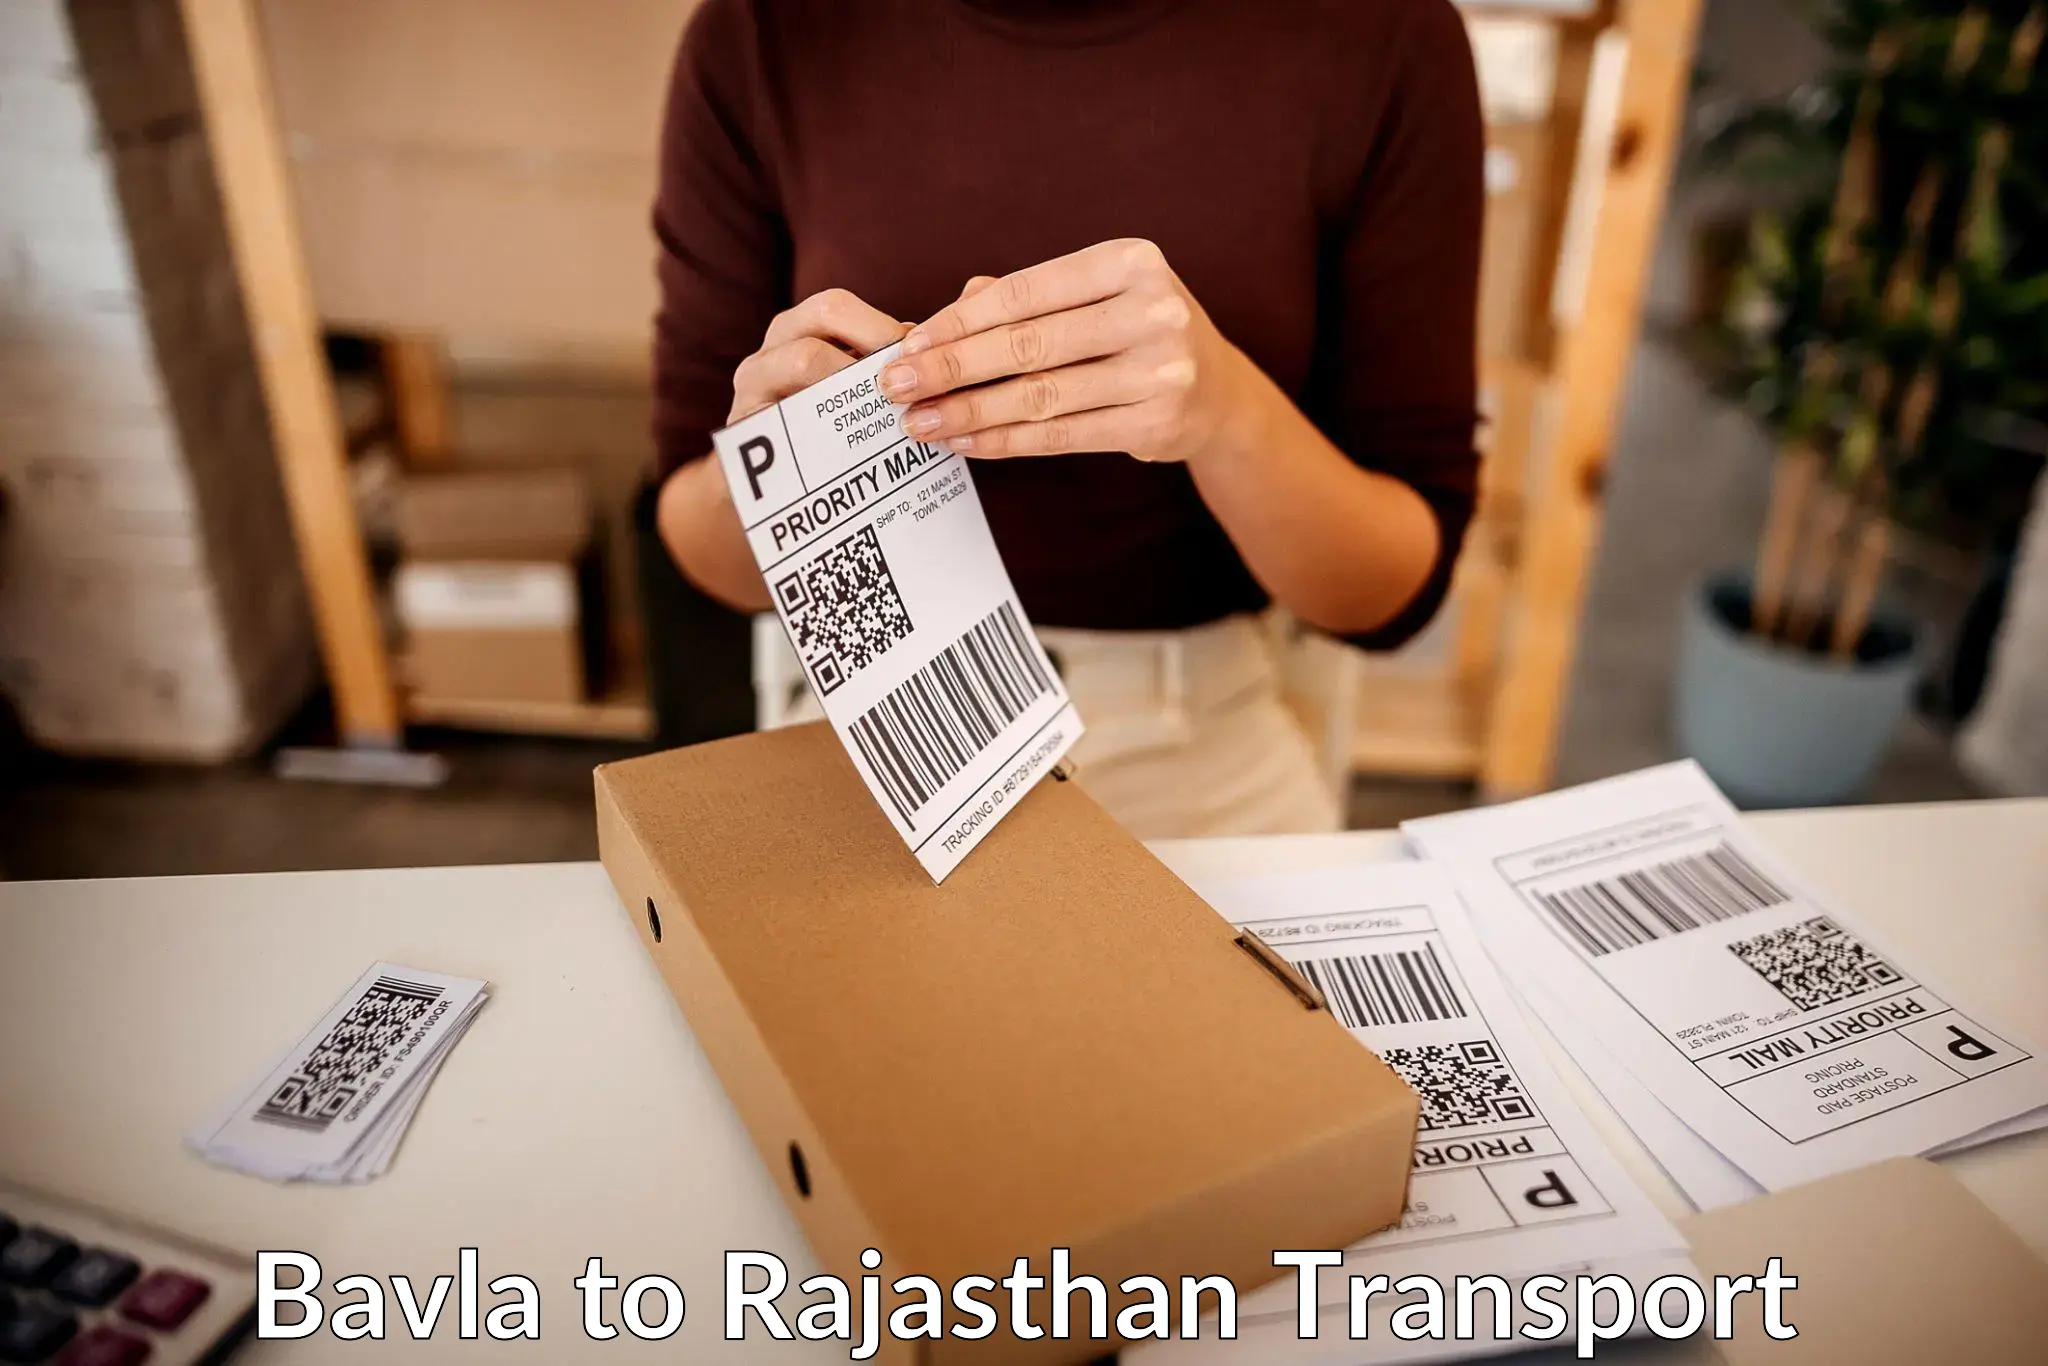 Cargo transport services Bavla to Nagar